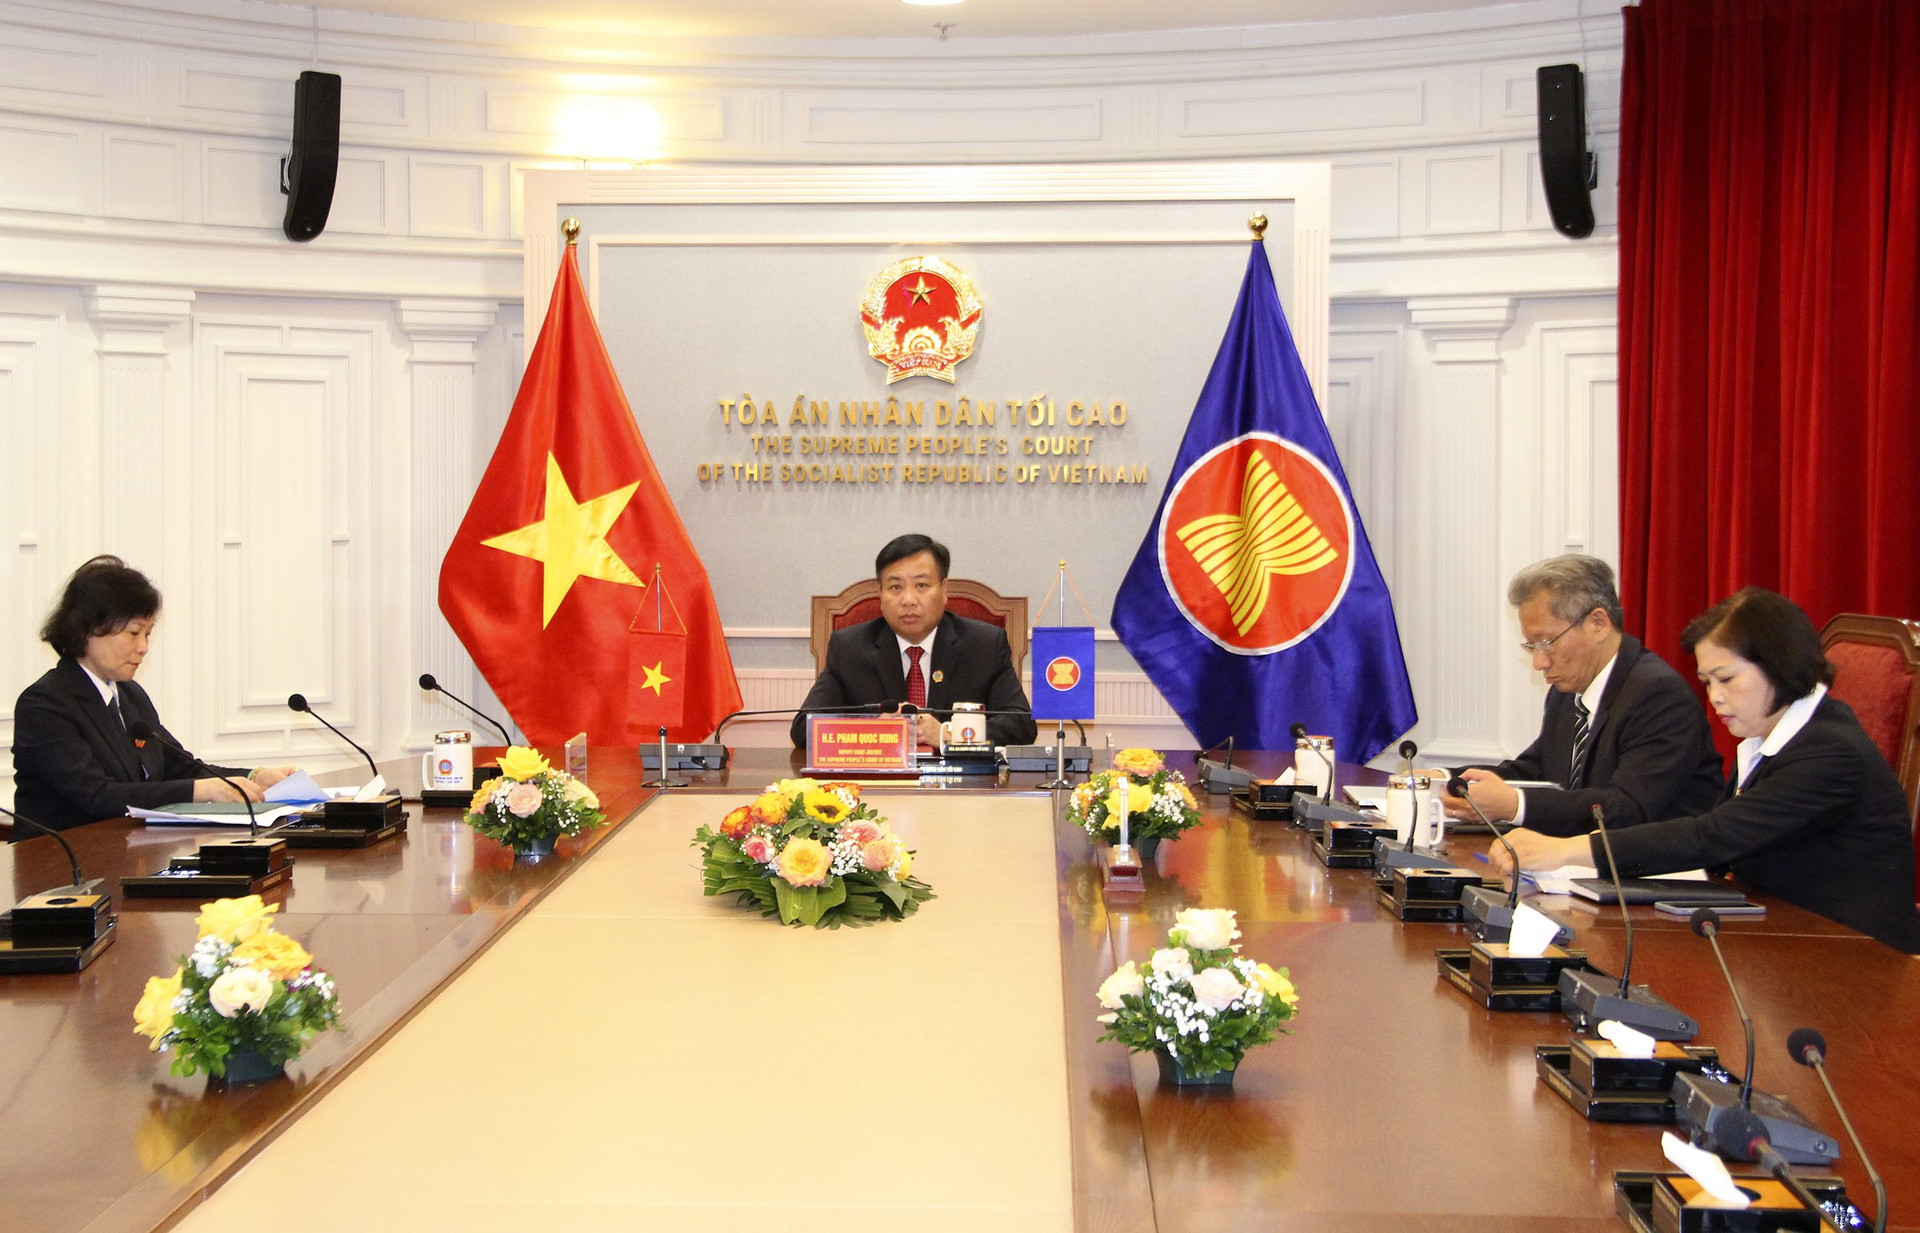 TANDTC tham gia Diễn đàn Tư pháp Trung Quốc - ASEAN lần thứ 3